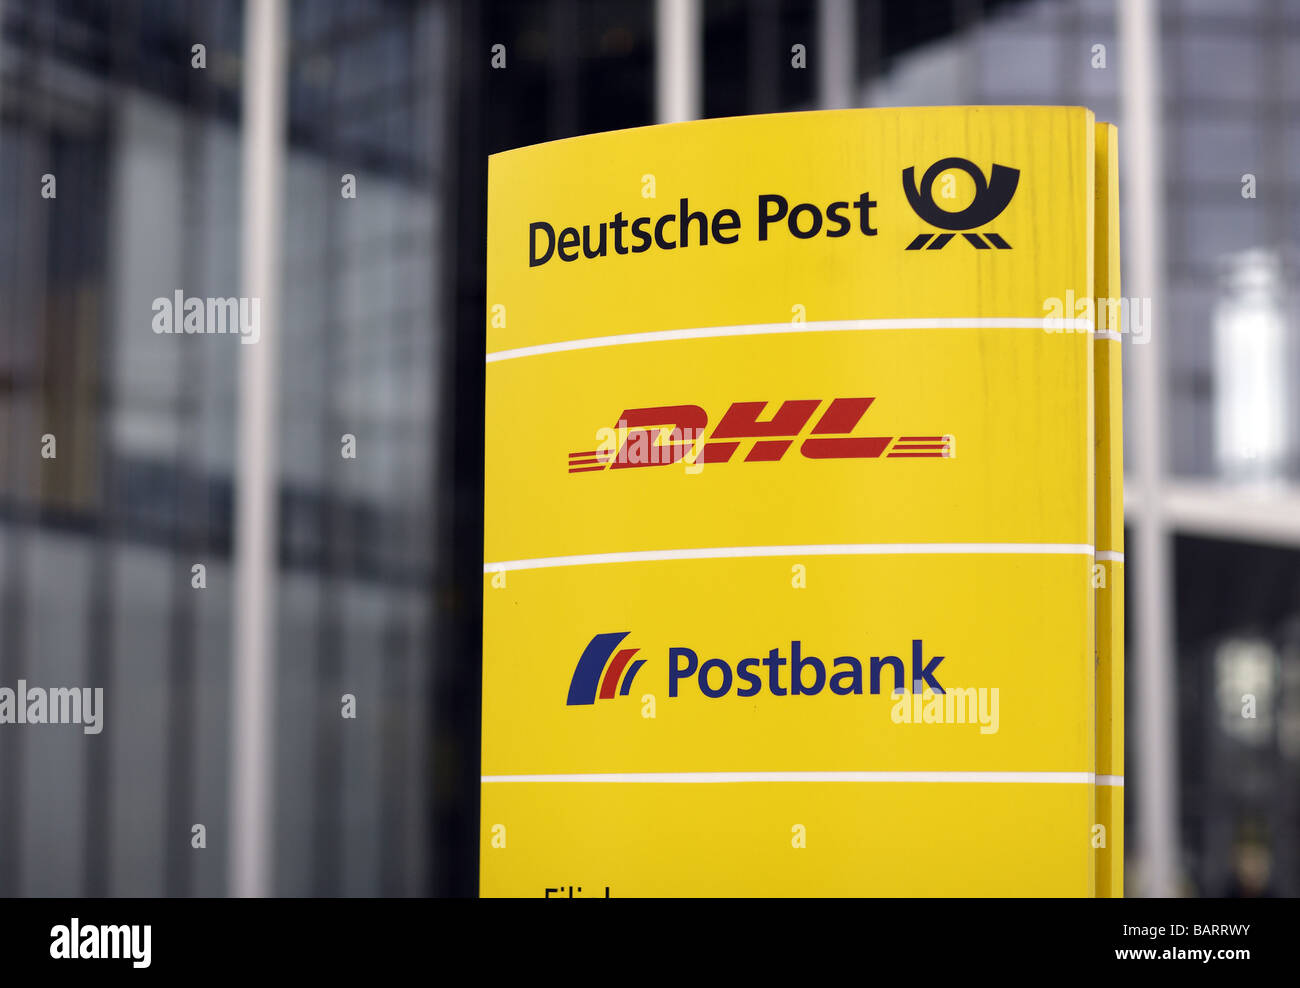 Deutsche post dhl Banque de photographies et d'images à haute résolution -  Alamy